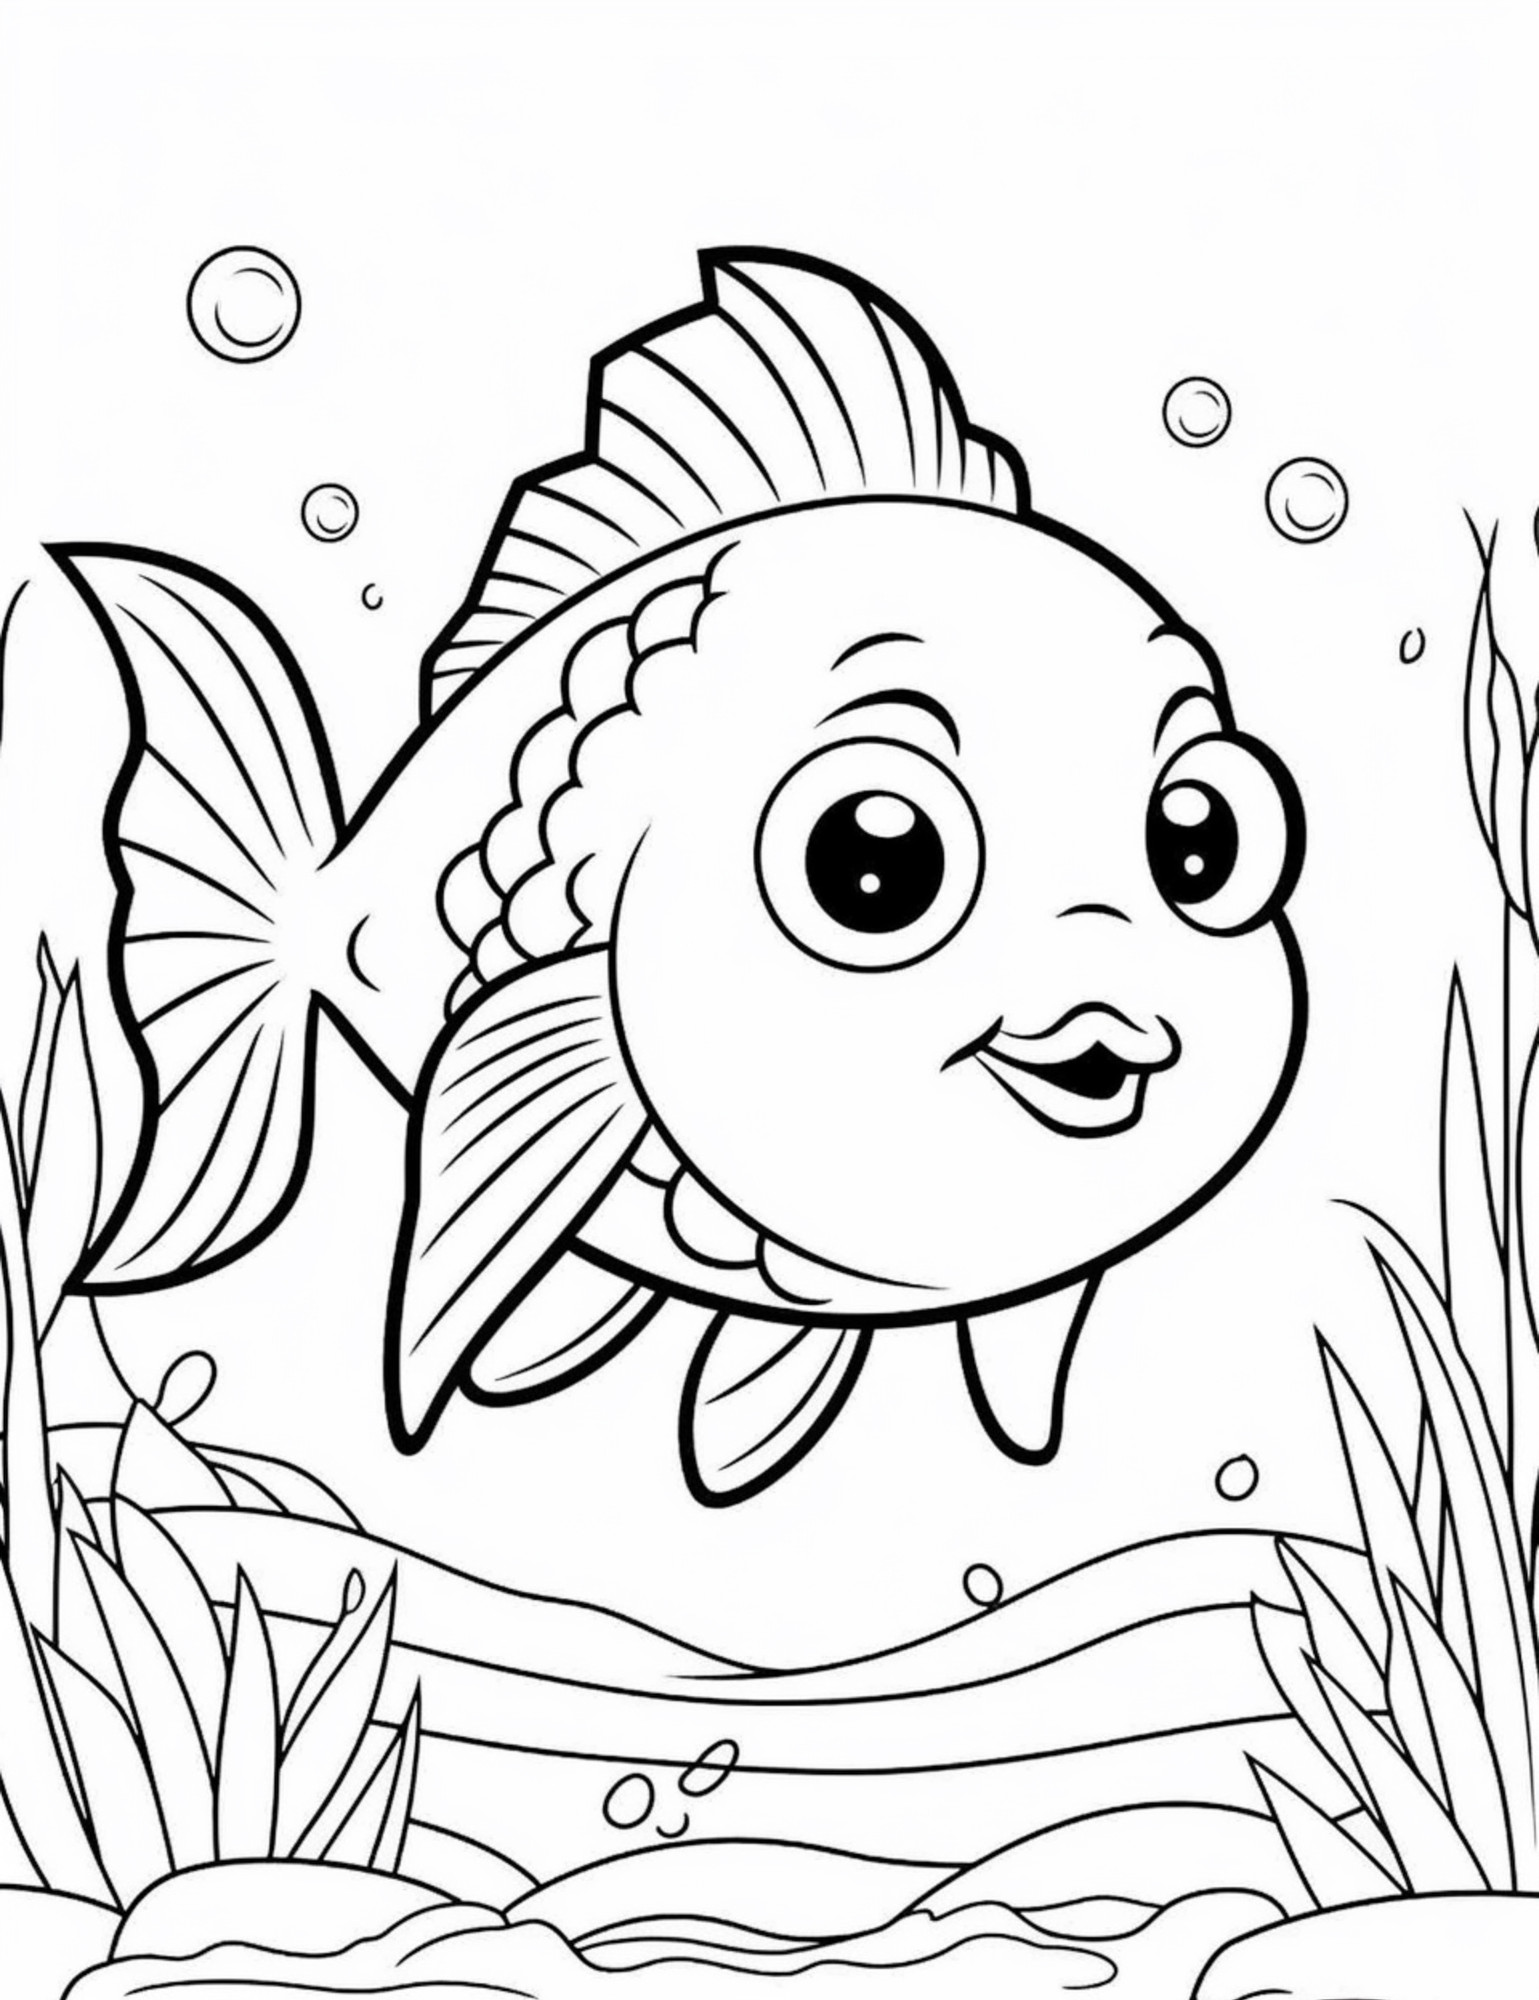 Раскраска для детей: рыба карась